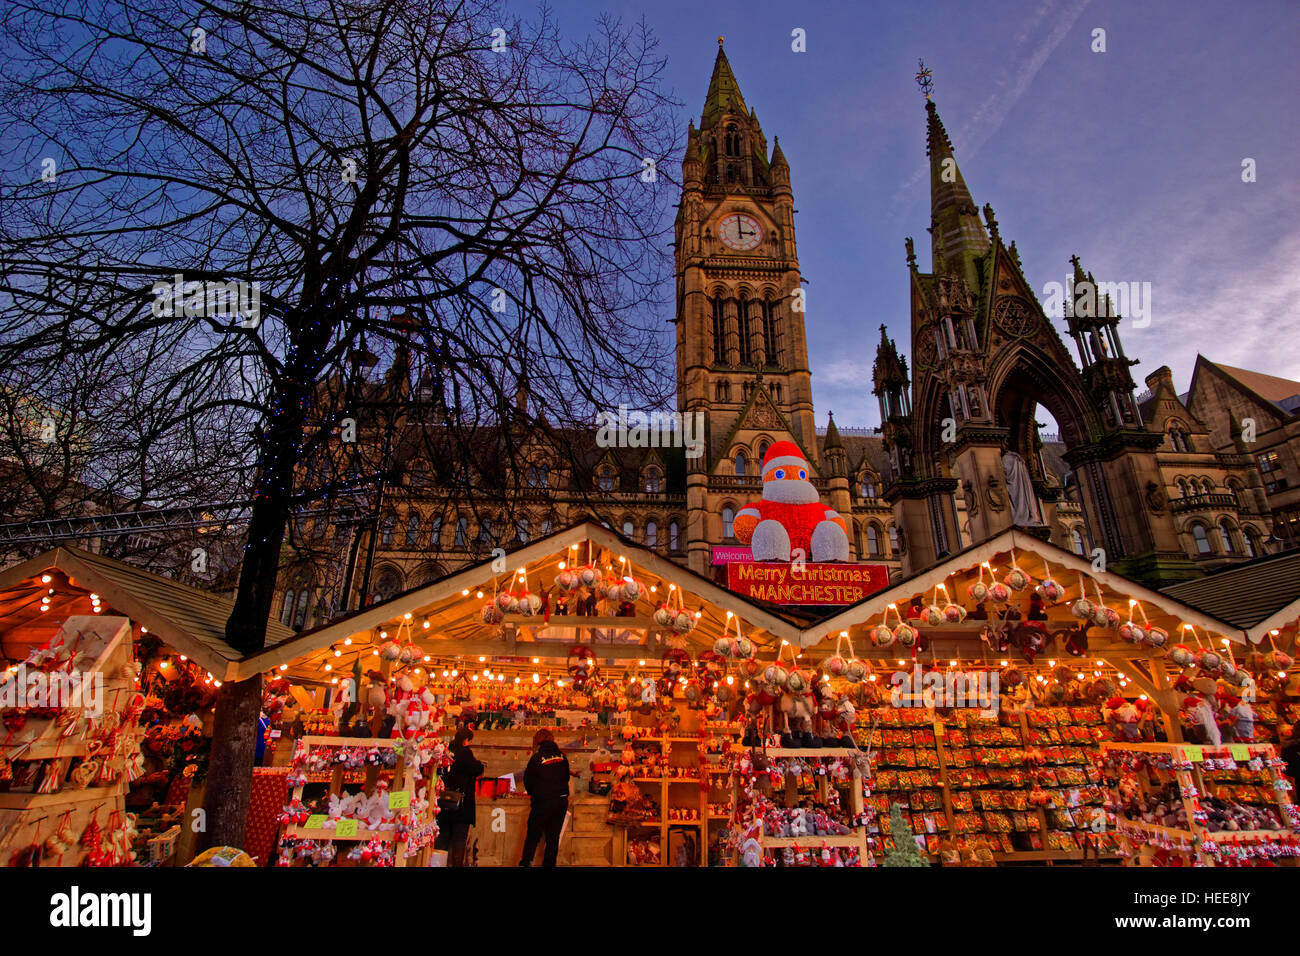 Manchester-Weihnachtsmarkt und Rathaus am Albert Square, Manchester Stadtzentrum, Greater Manchester. England. UK Stockfoto